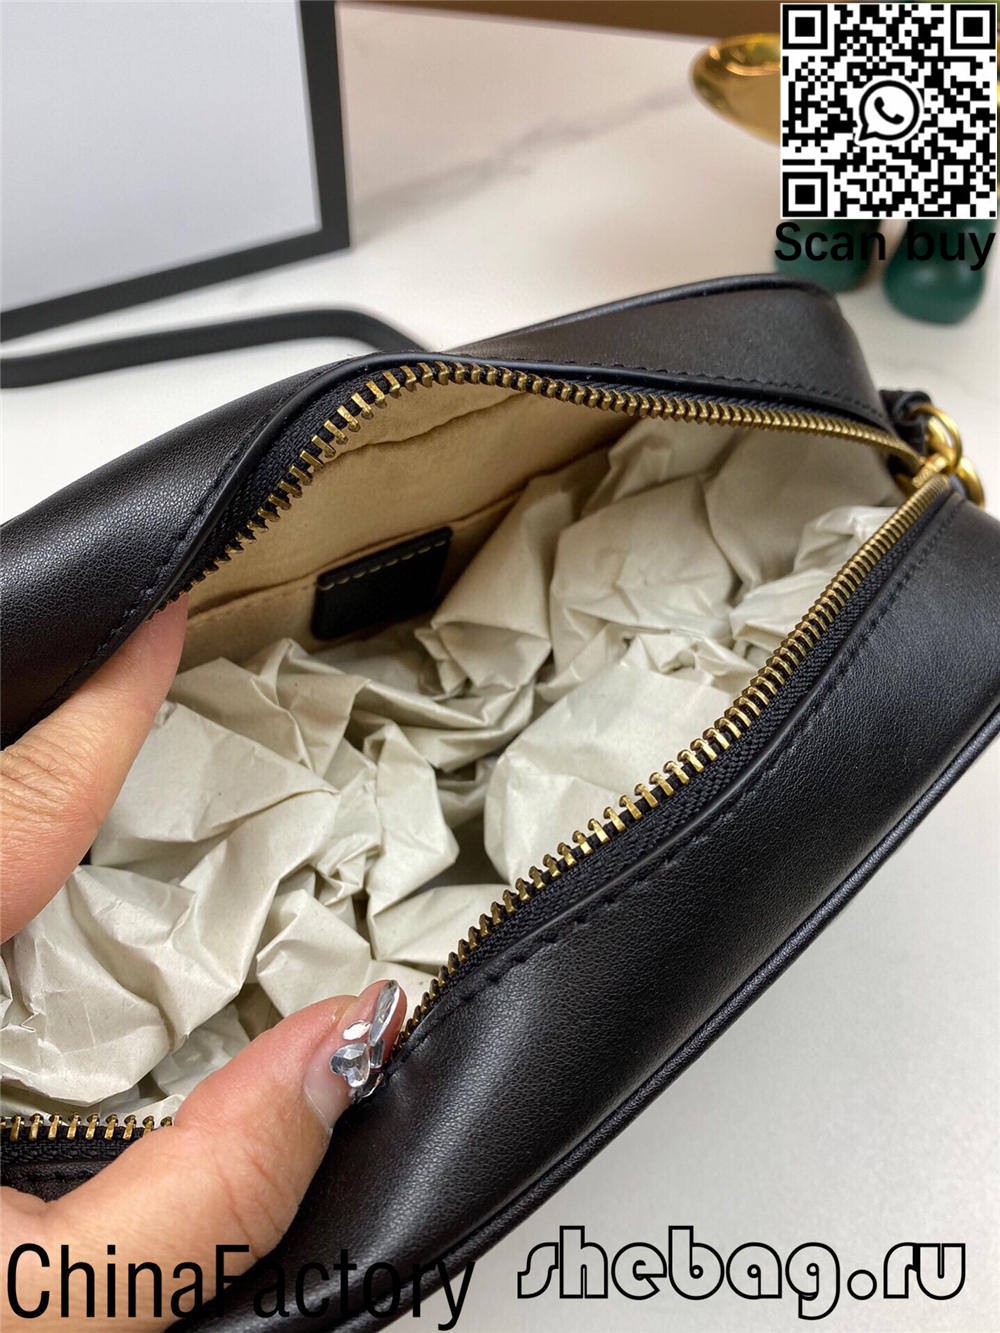 Mistä löydän GG-pussin replikan toimittajan Isossa-Britanniassa? (2022 päivitetty) - Paras laatu väärennetty Louis Vuitton Bag -verkkokauppa, Replica designer bag ru